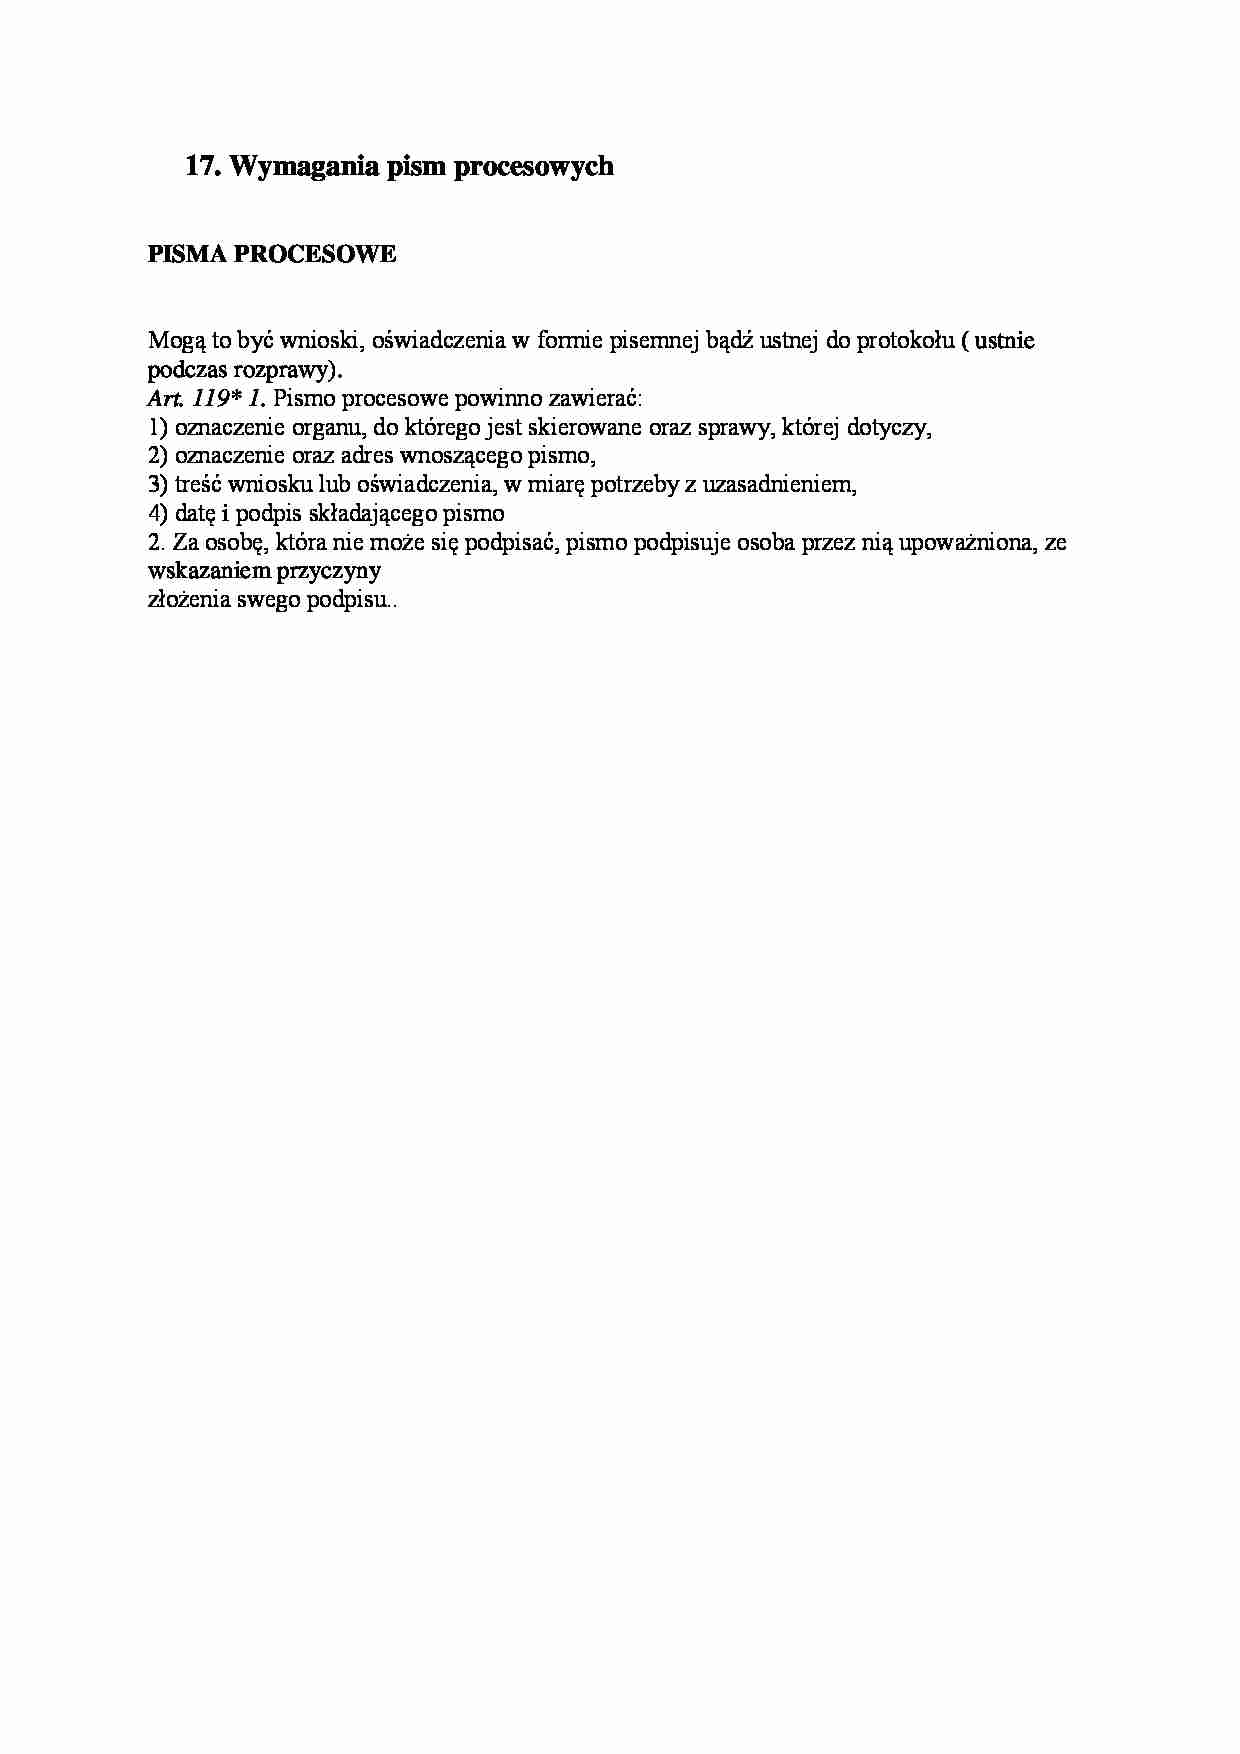 Wymagania pism procesowych - opracowanie - strona 1